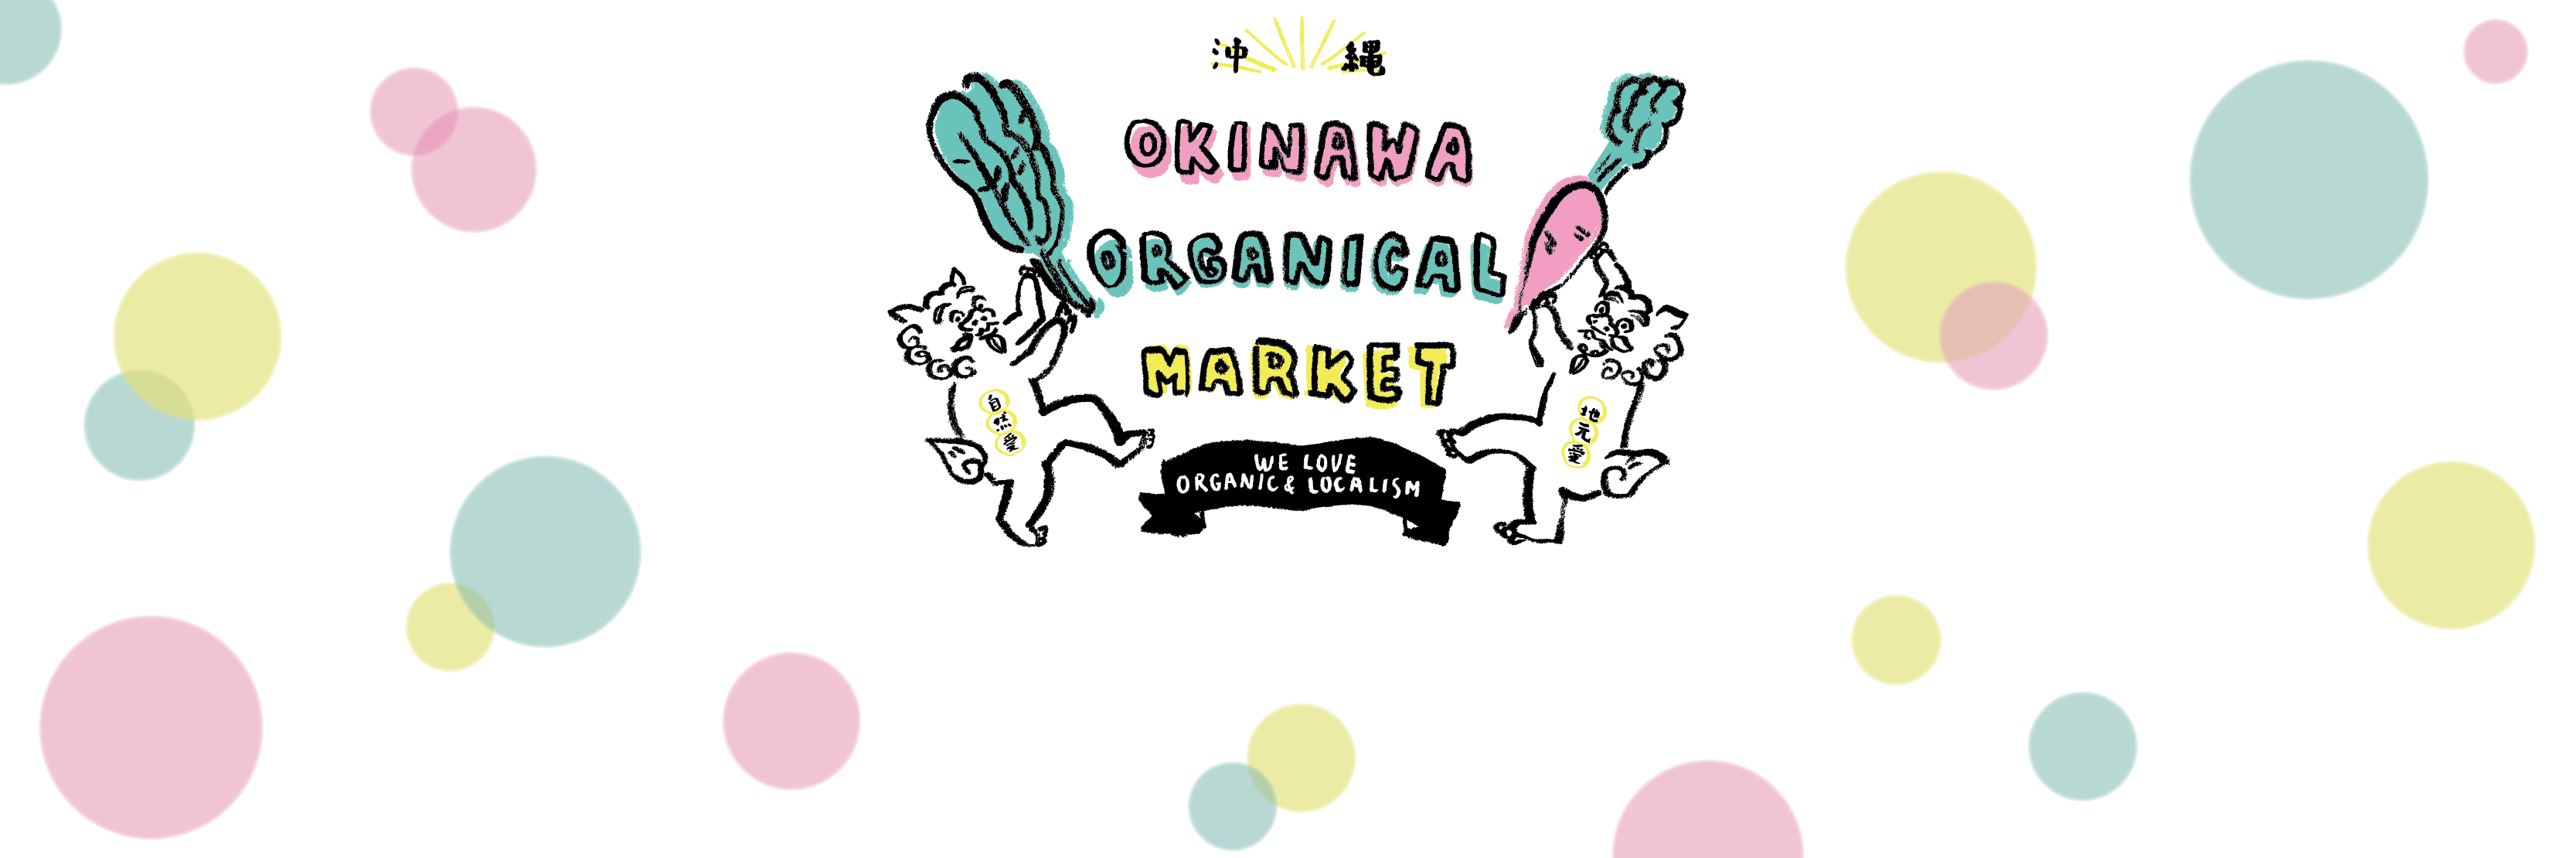 OKINAWA ORGANICAL MARKET